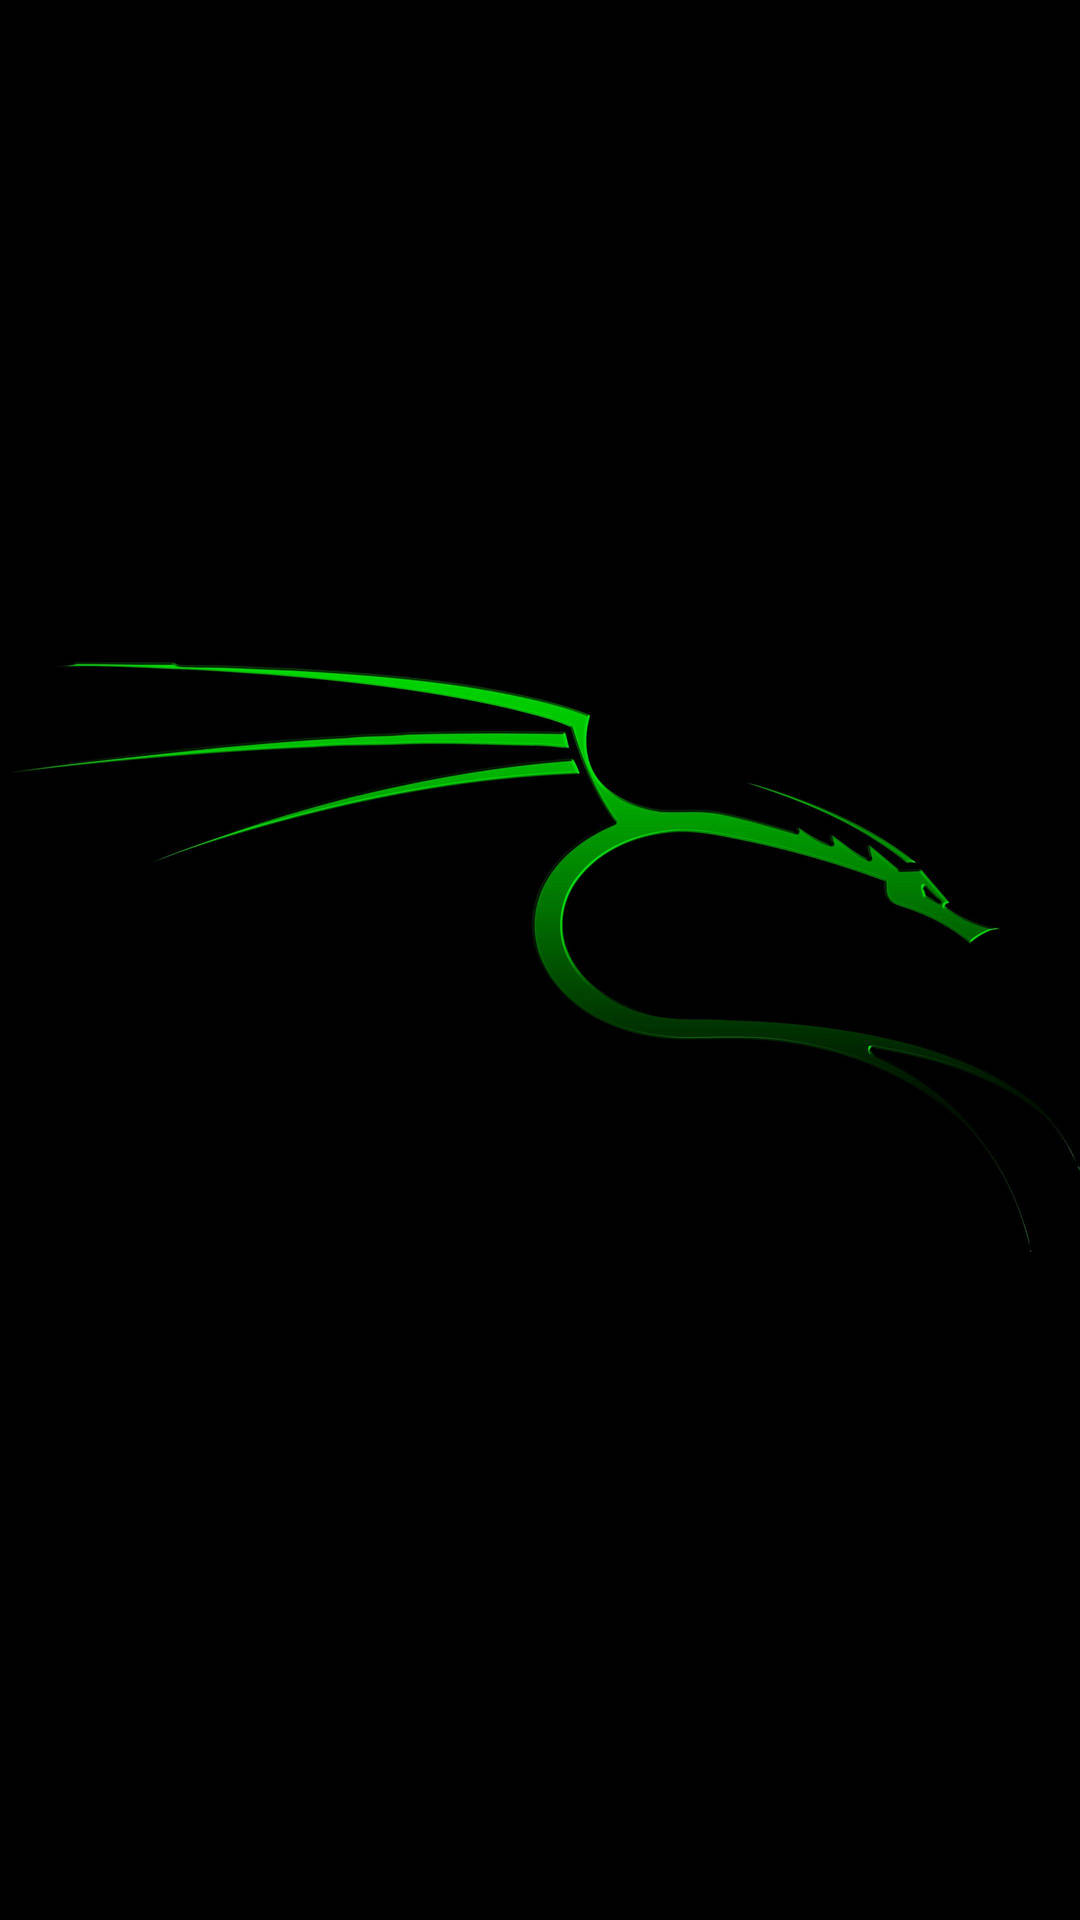 Kali Linux Neon Dragon